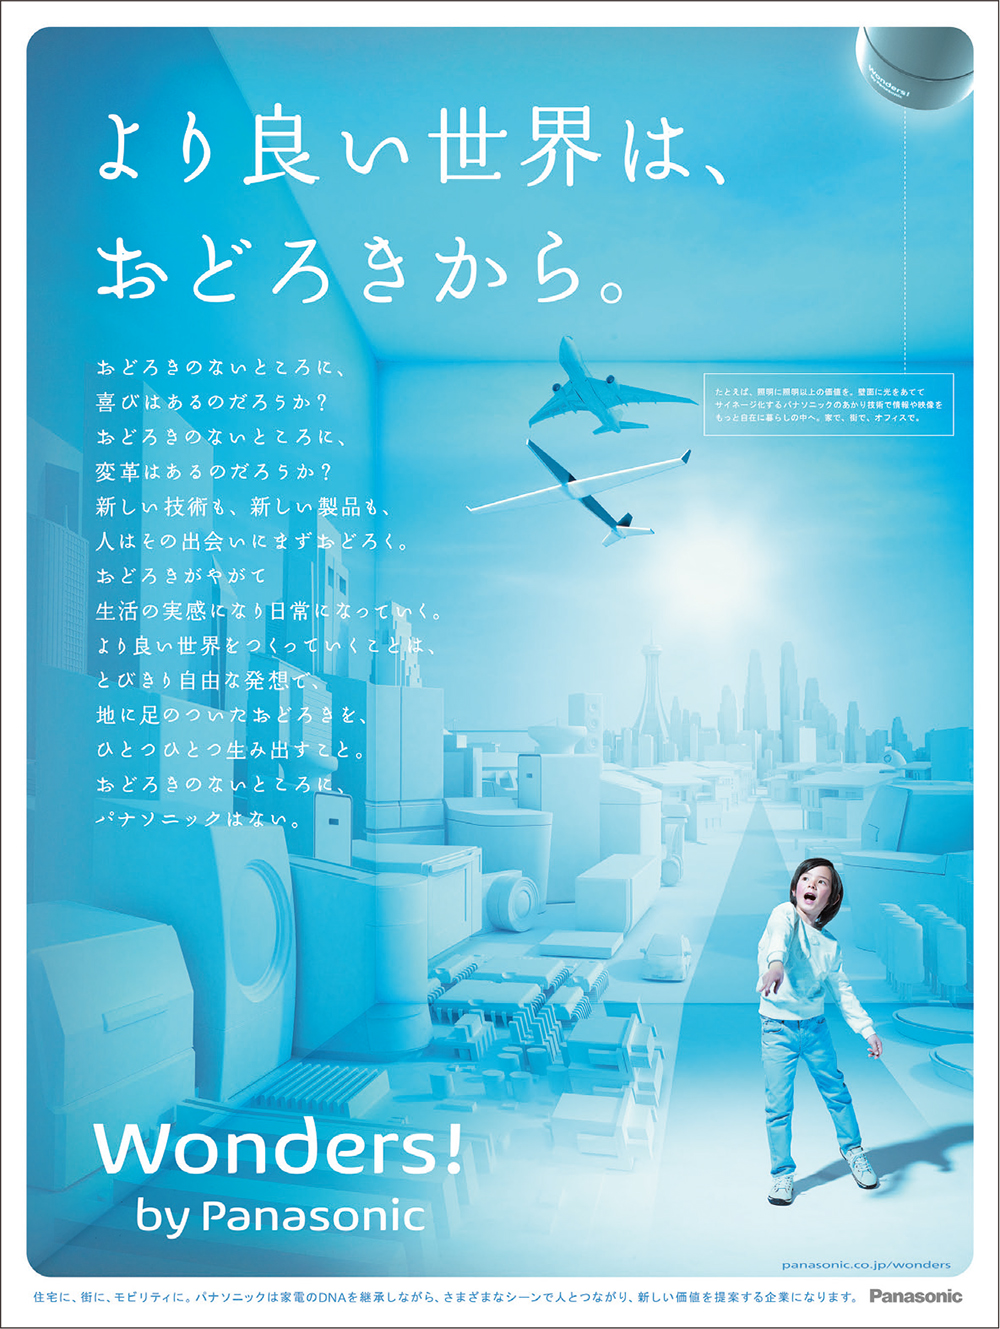 今月の注目広告 パナソニック Wonder始動 篇 ブレーンデジタル版